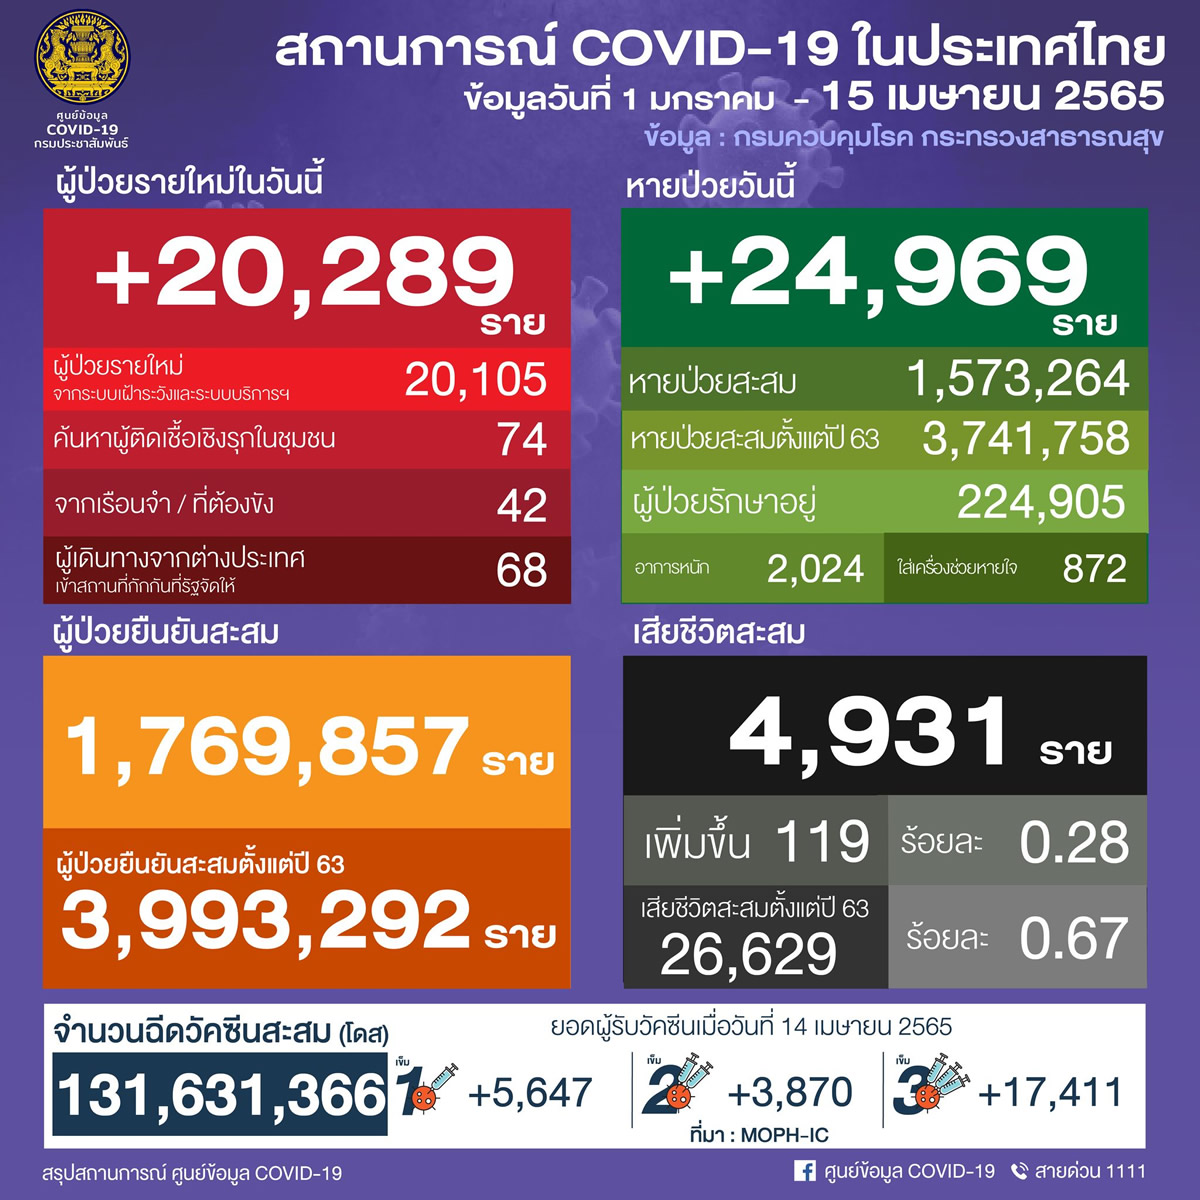 タイ 20,289人陽性 119人死亡／バンコク 3,110人陽性／チョンブリ 736人陽性／ナコンシータマラート 726人陽性［2022年4月15日発表］